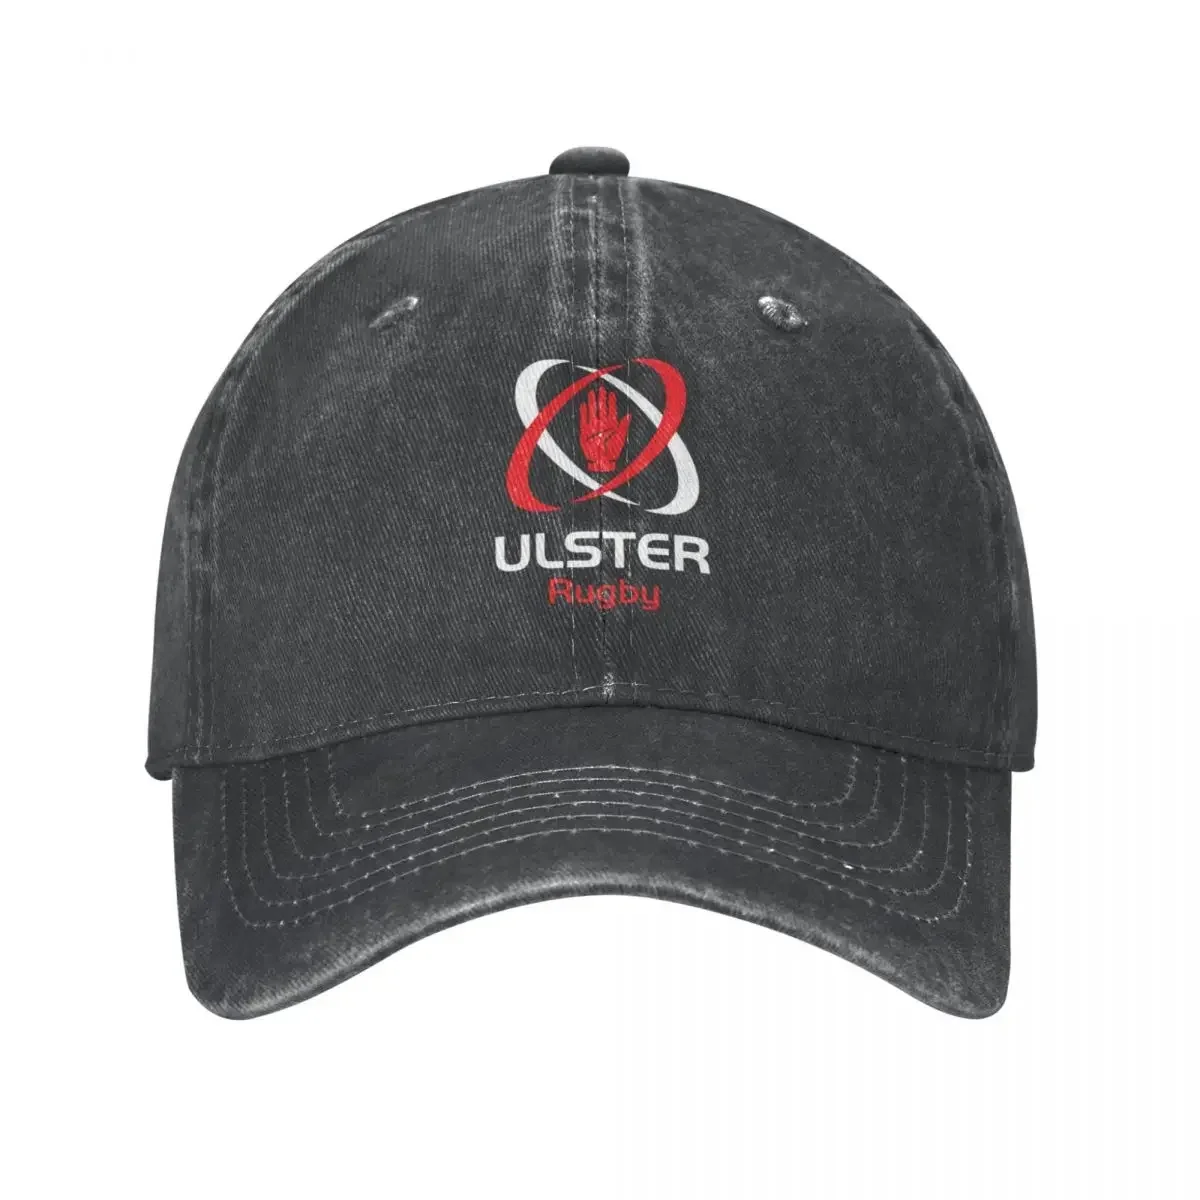 

IRFU-знаковая ковбойская шляпа Ulster для регби, походная шляпа, забавная шляпа, Мужская кепка для гольфа, кепки для женщин и мужчин